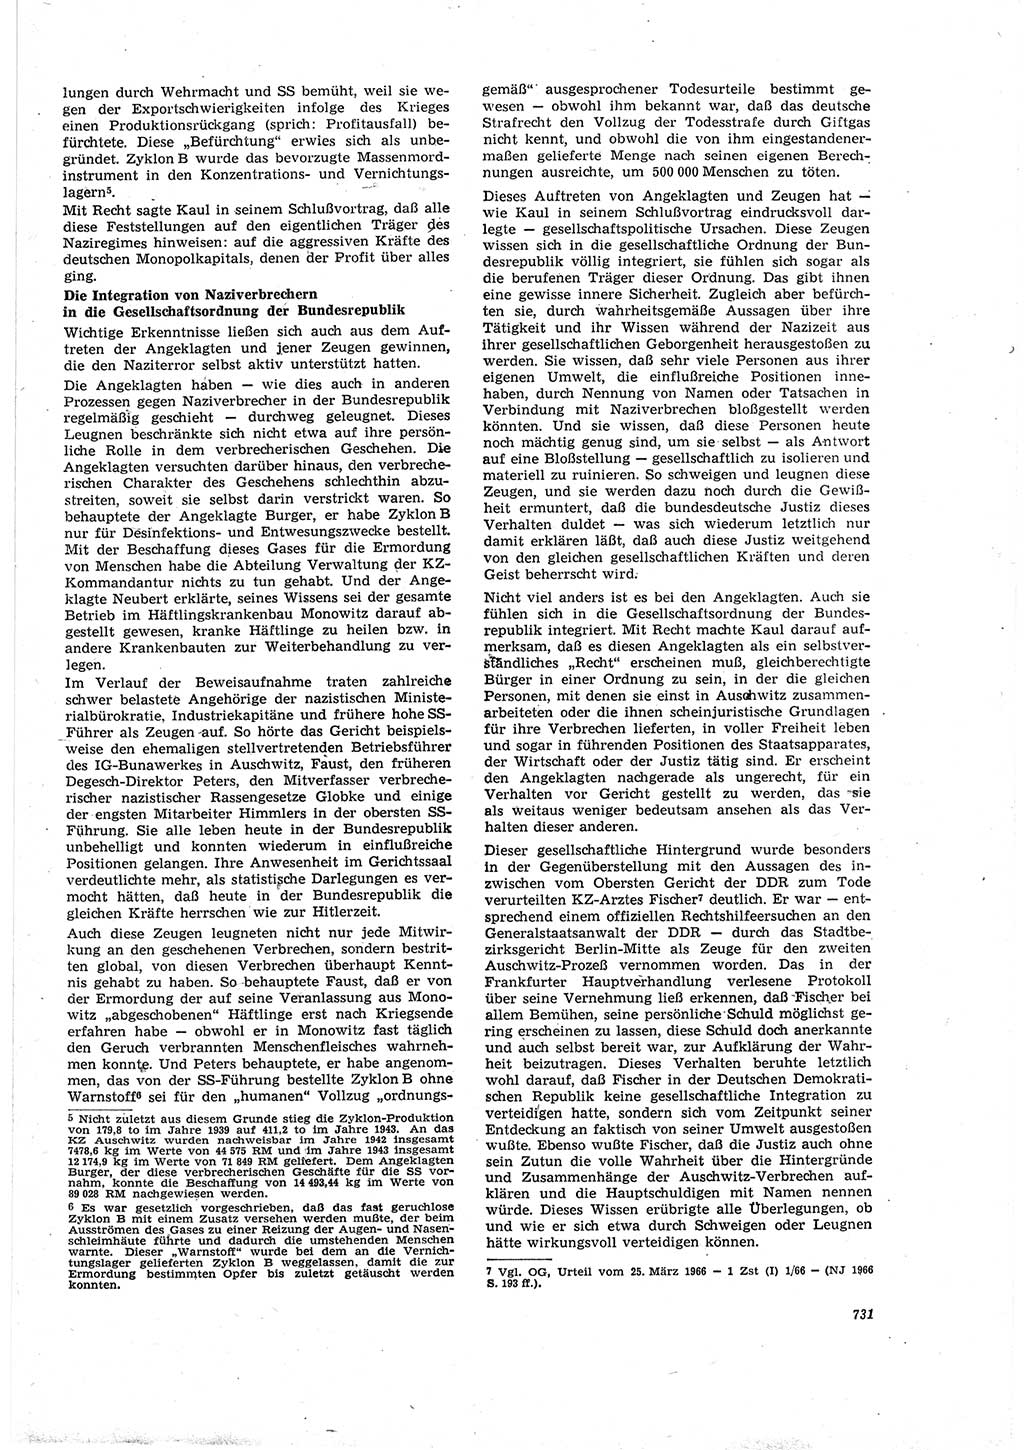 Neue Justiz (NJ), Zeitschrift für Recht und Rechtswissenschaft [Deutsche Demokratische Republik (DDR)], 20. Jahrgang 1966, Seite 731 (NJ DDR 1966, S. 731)